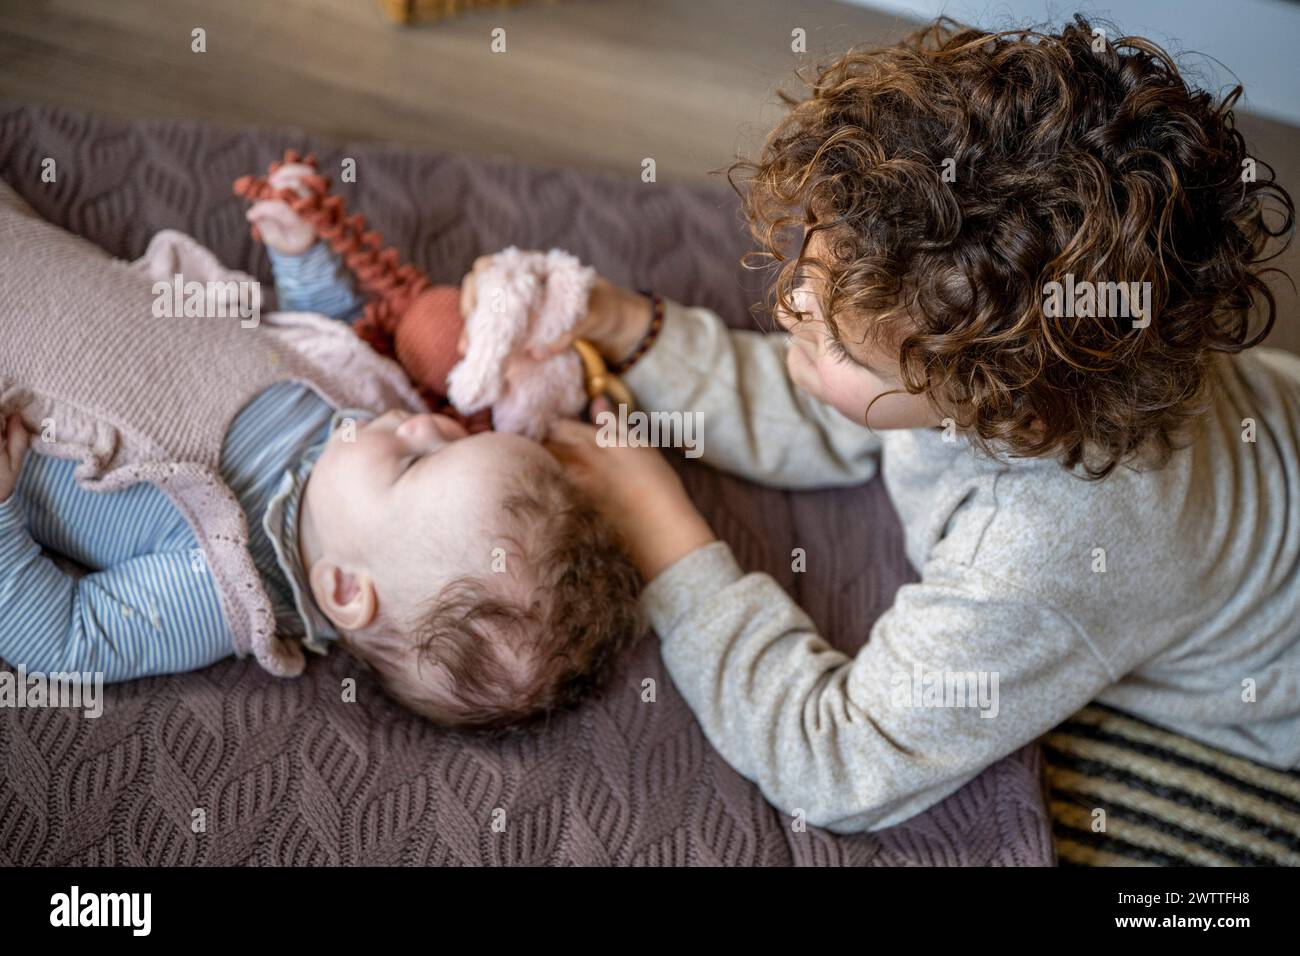 Ein älteres Geschwister interagiert zärtlich mit einem Baby, das auf einer kuscheligen Decke liegt. Stockfoto